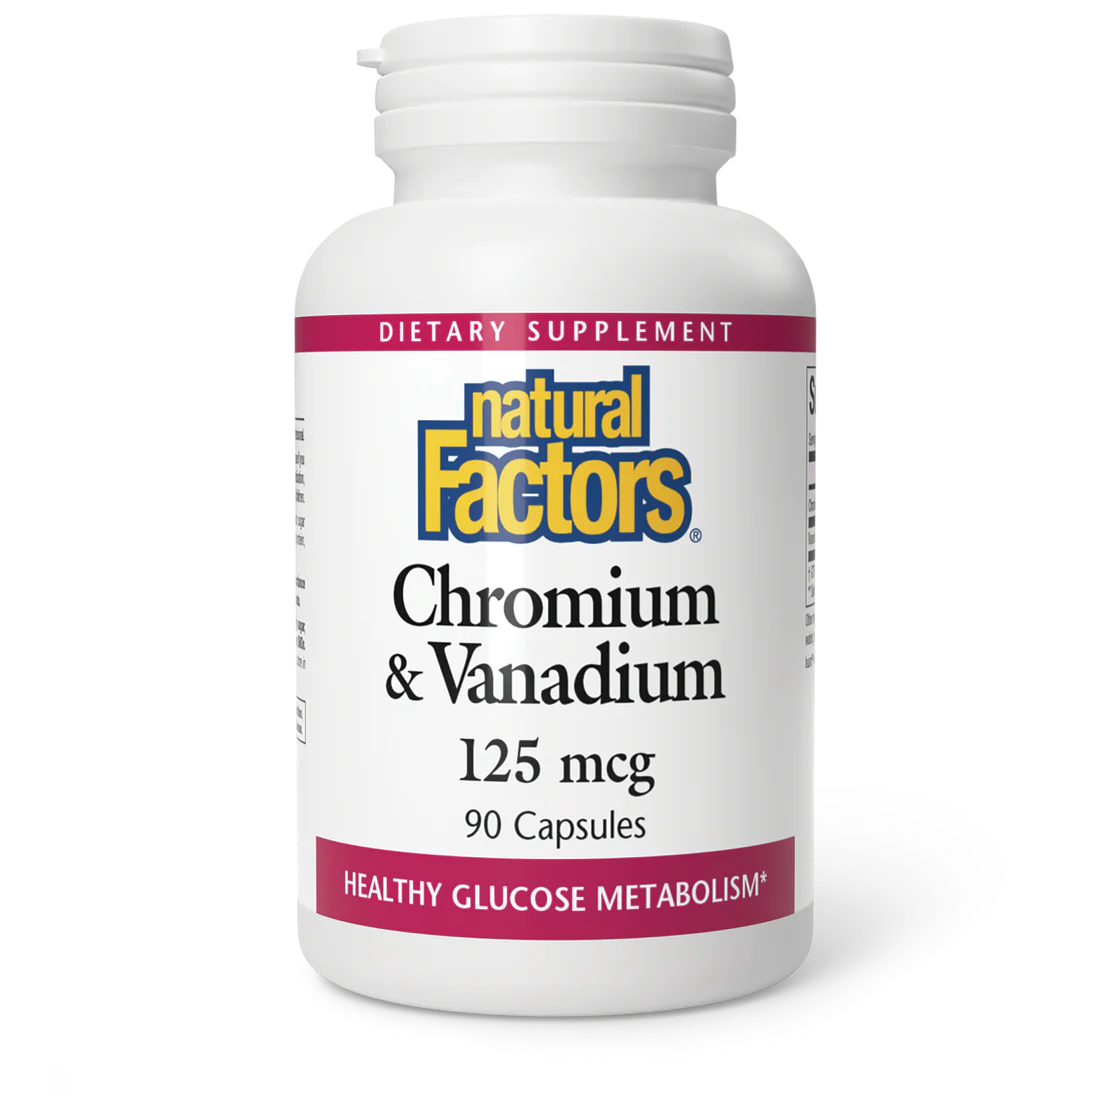 Chromium & Vanadium 125 mcg by Natural Factors, 90 caps